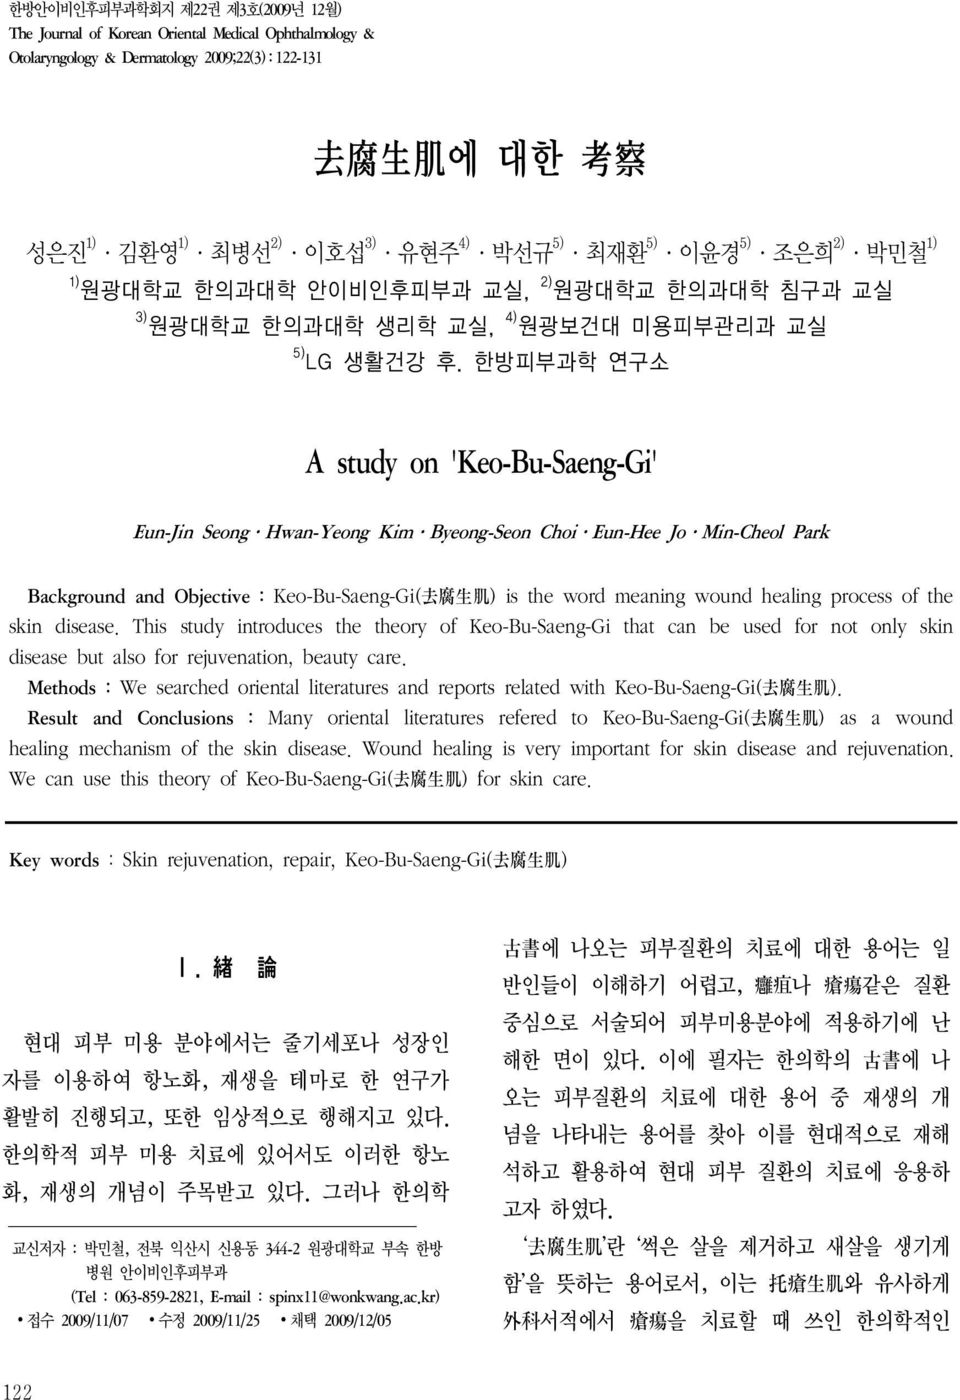 한방피부과학 연구소 A study on 'Keo-Bu-Saeng-Gi' Eun-Jin Seong Hwan-Yeong Kim Byeong-Seon Choi Eun-Hee Jo Min-Cheol Park Background and Objective : Keo-Bu-Saeng-Gi( 去 腐 生 肌 ) is the word meaning wound healing